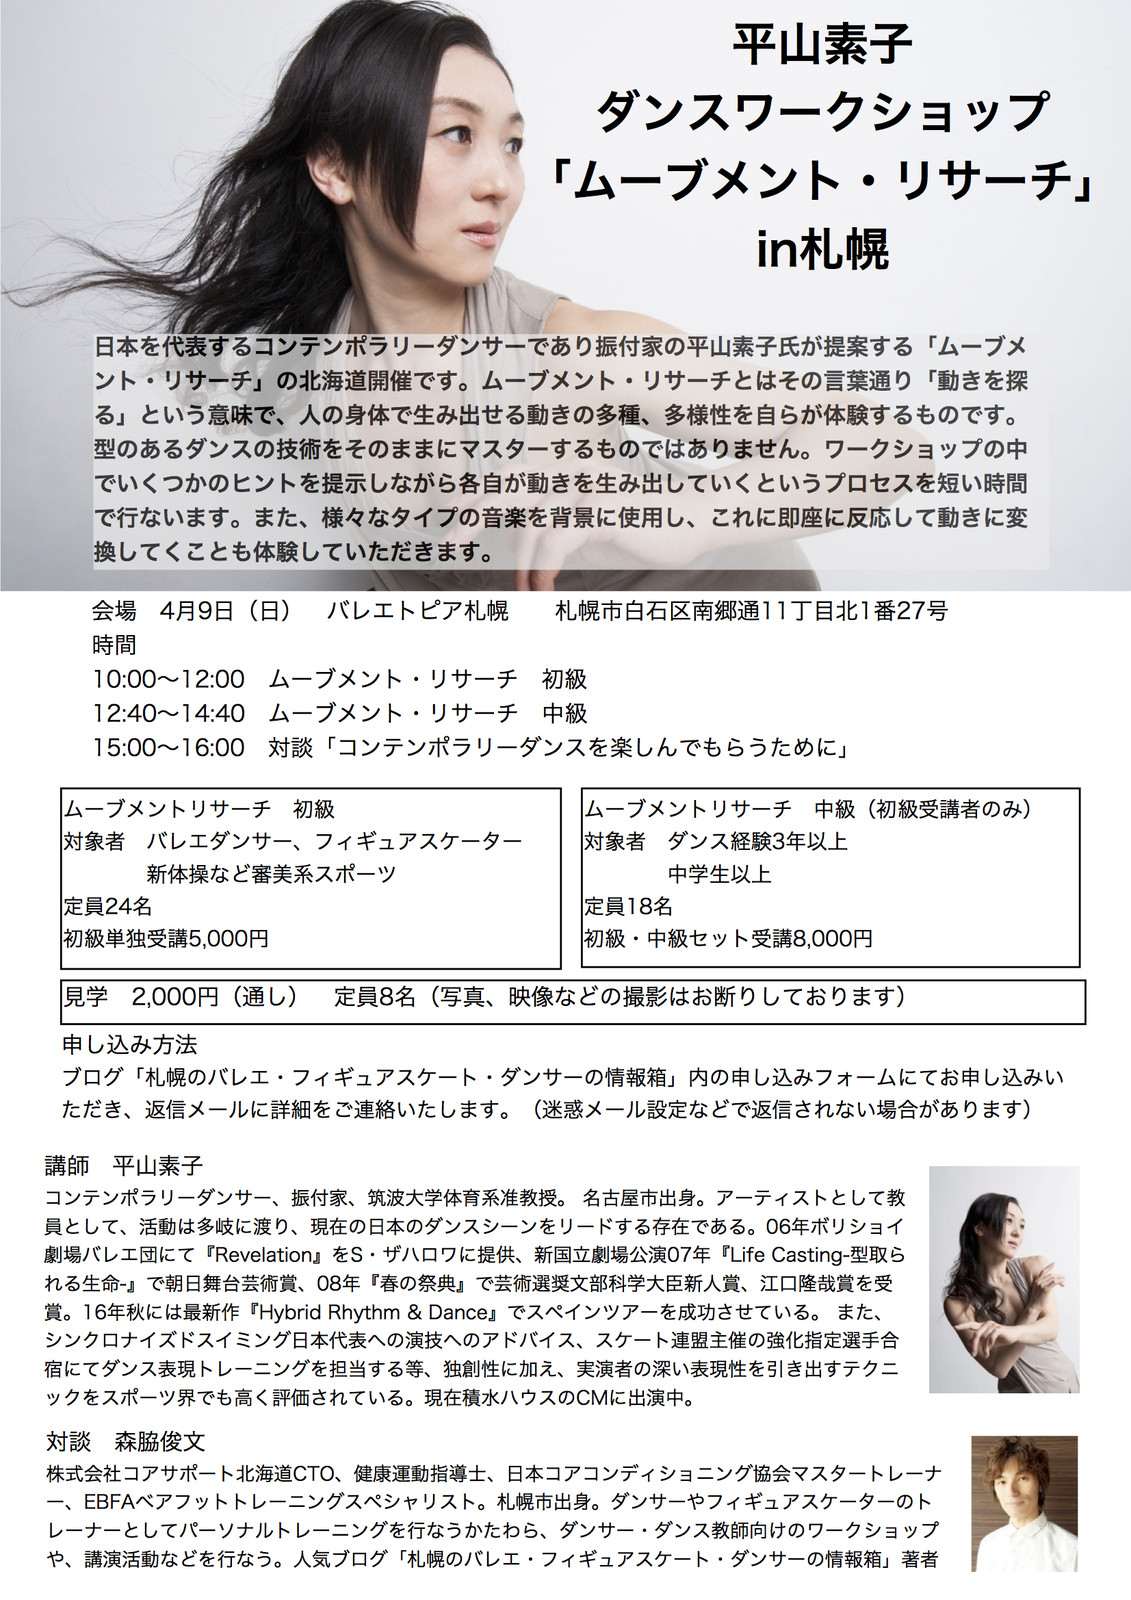 平山素子ダンスワークショップ ムーブメント リサーチ 札幌の悩めるバレエ フィギュアスケート ダンサーの為の情報箱